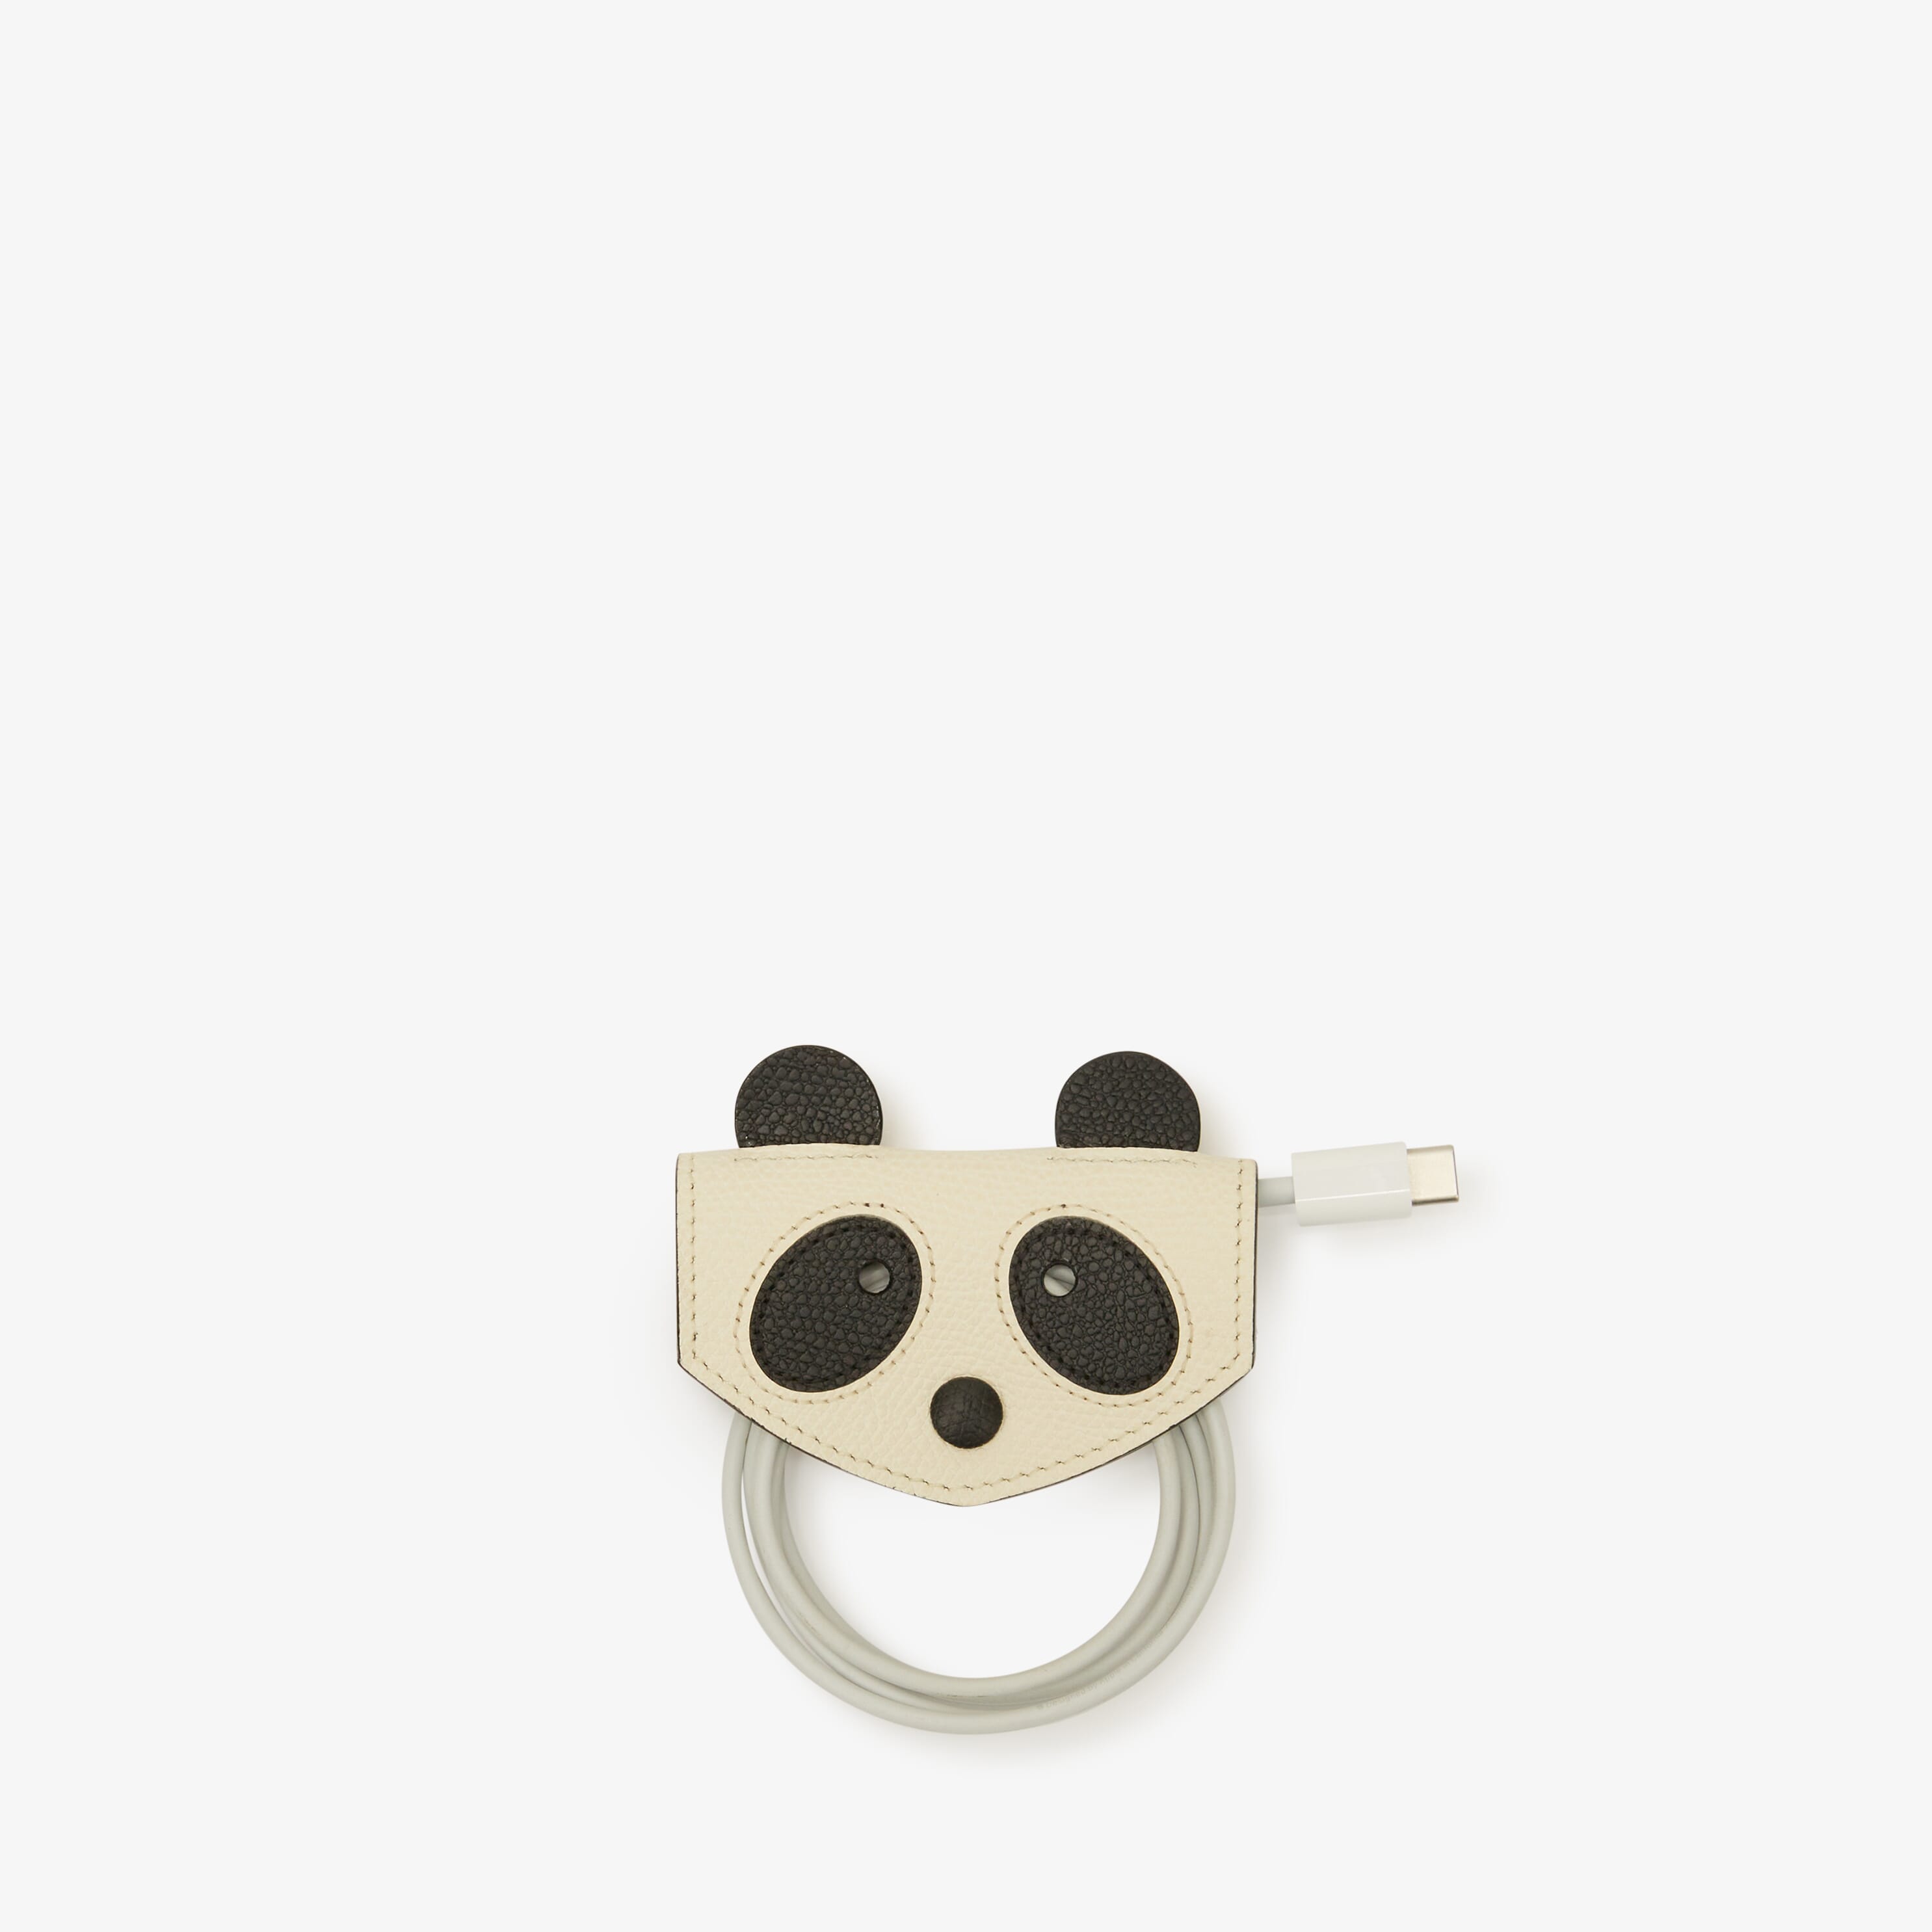 Panda small cable holder - Pergamena White/Black - Vitello VS-Panda - Valextra - 2